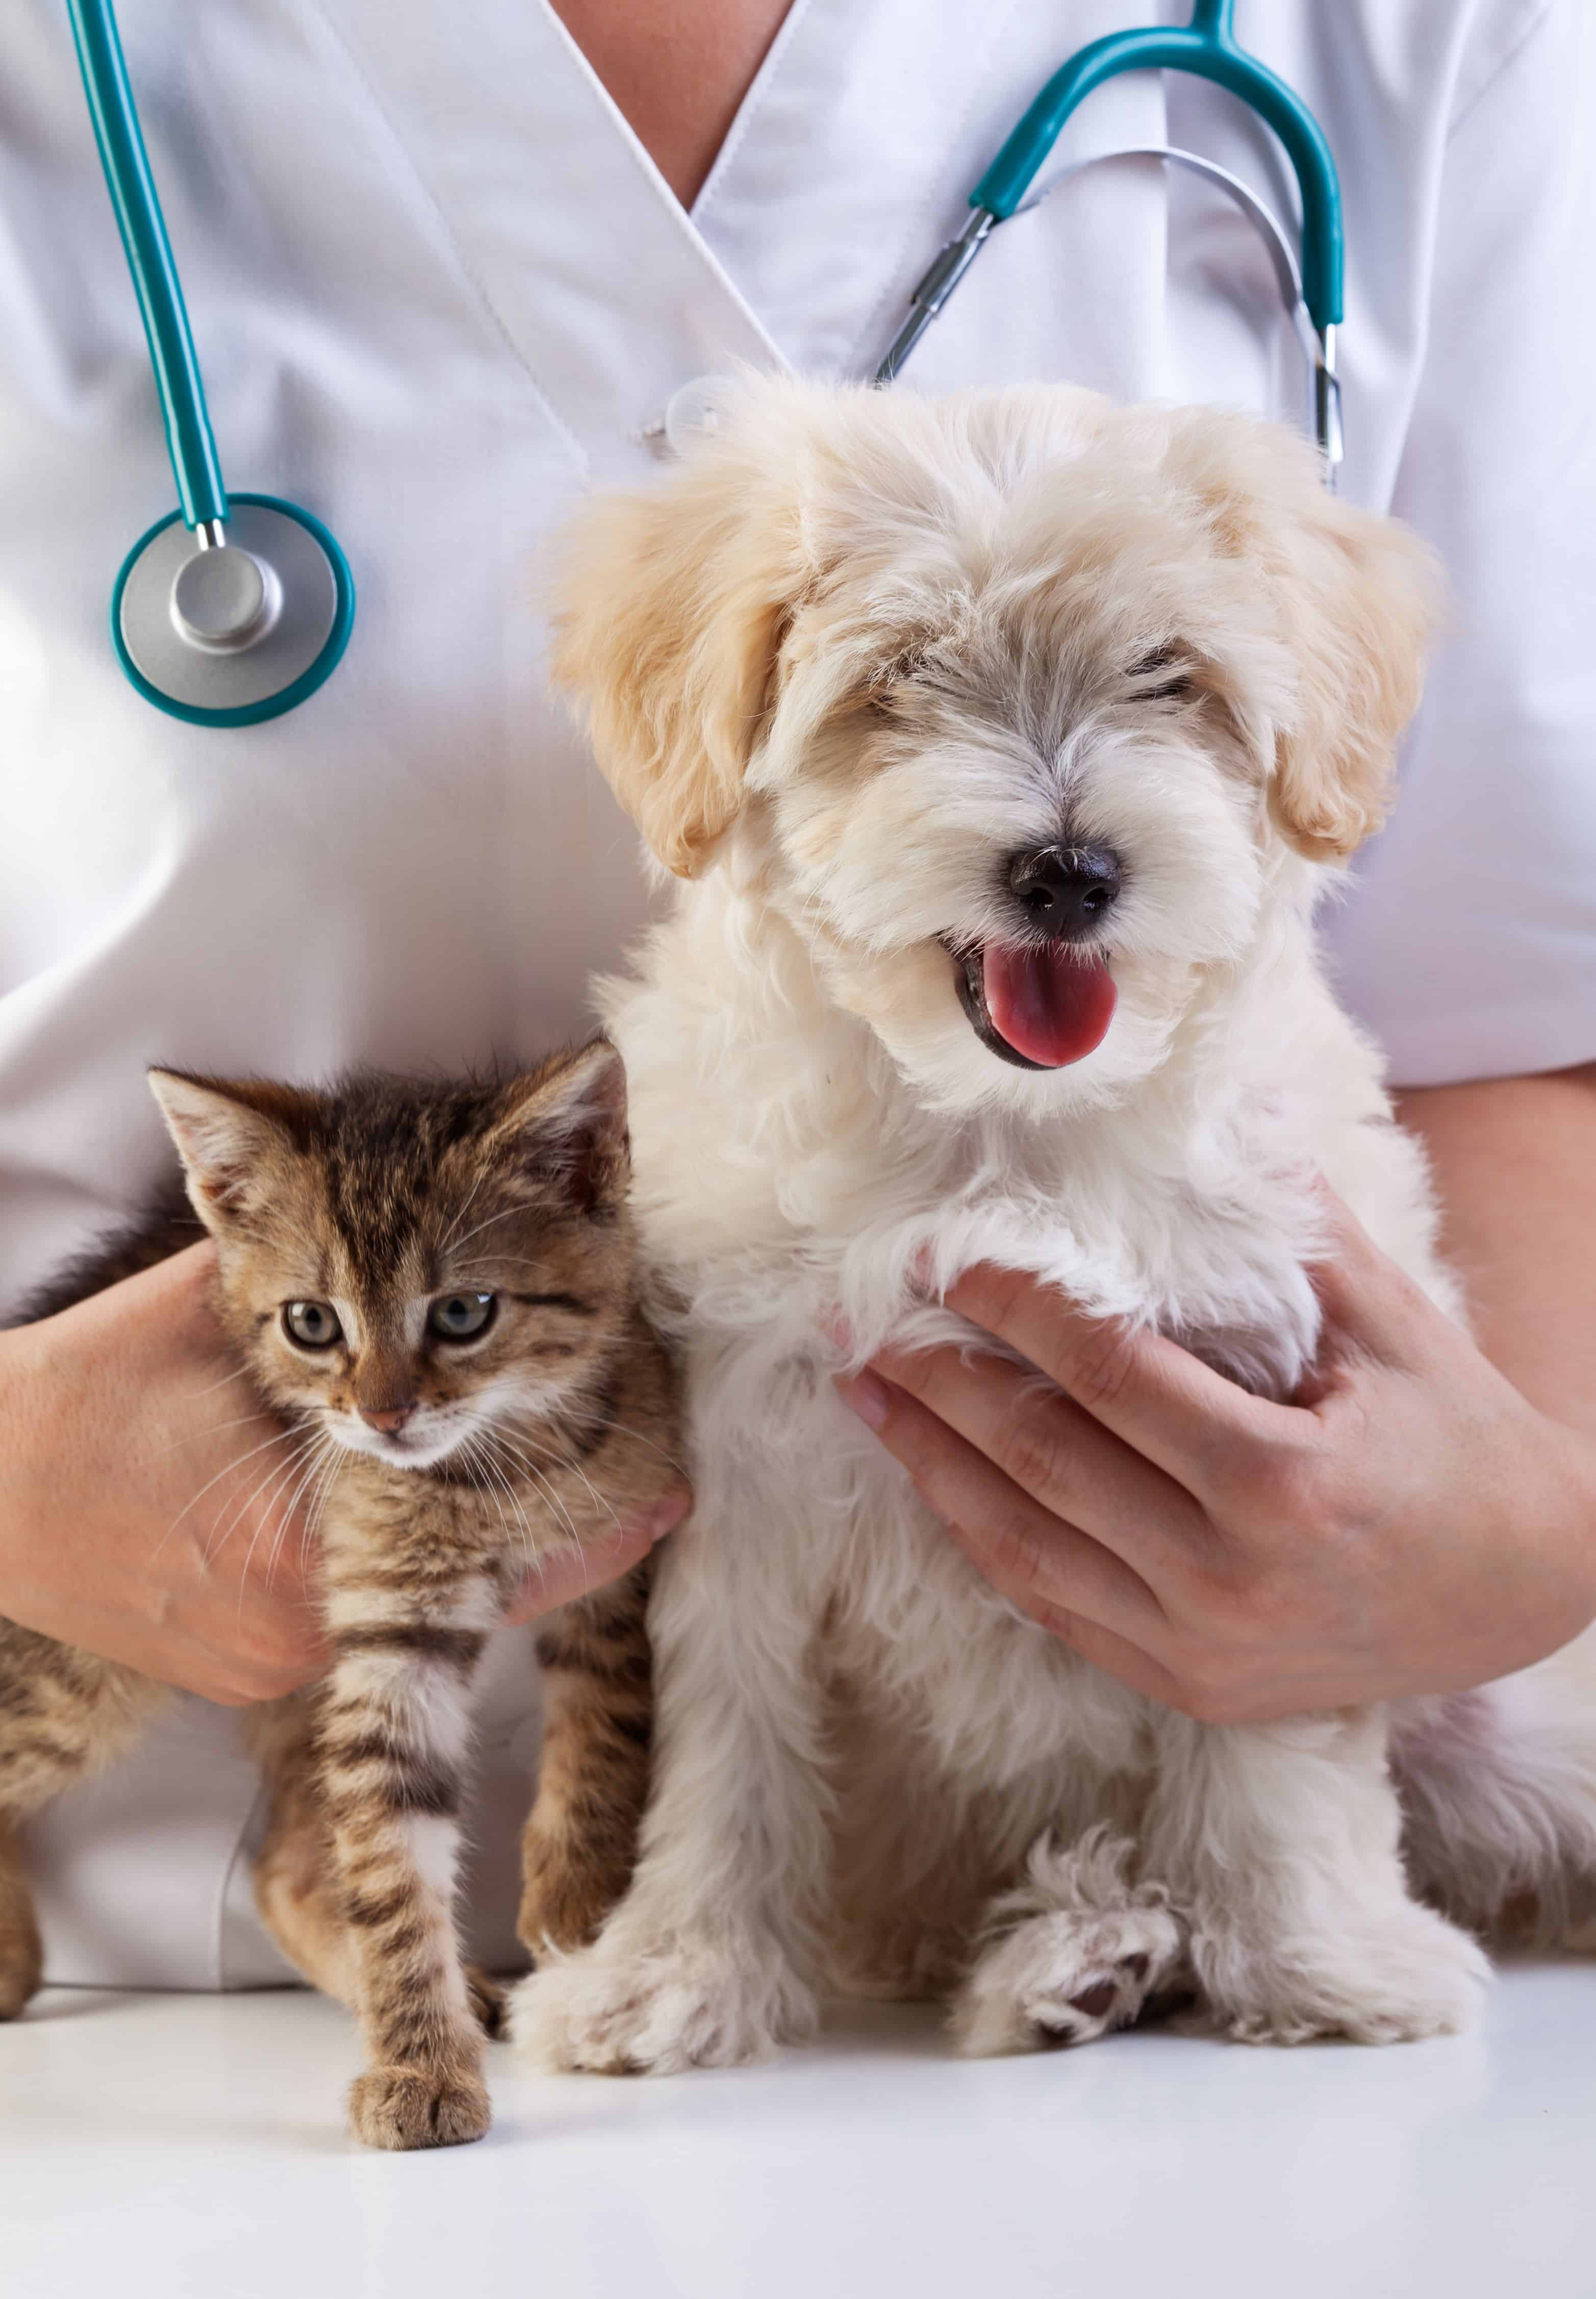 Kenito pet. Ветеринар. Кошки и собаки. Терапия животных. Я ветеринар.